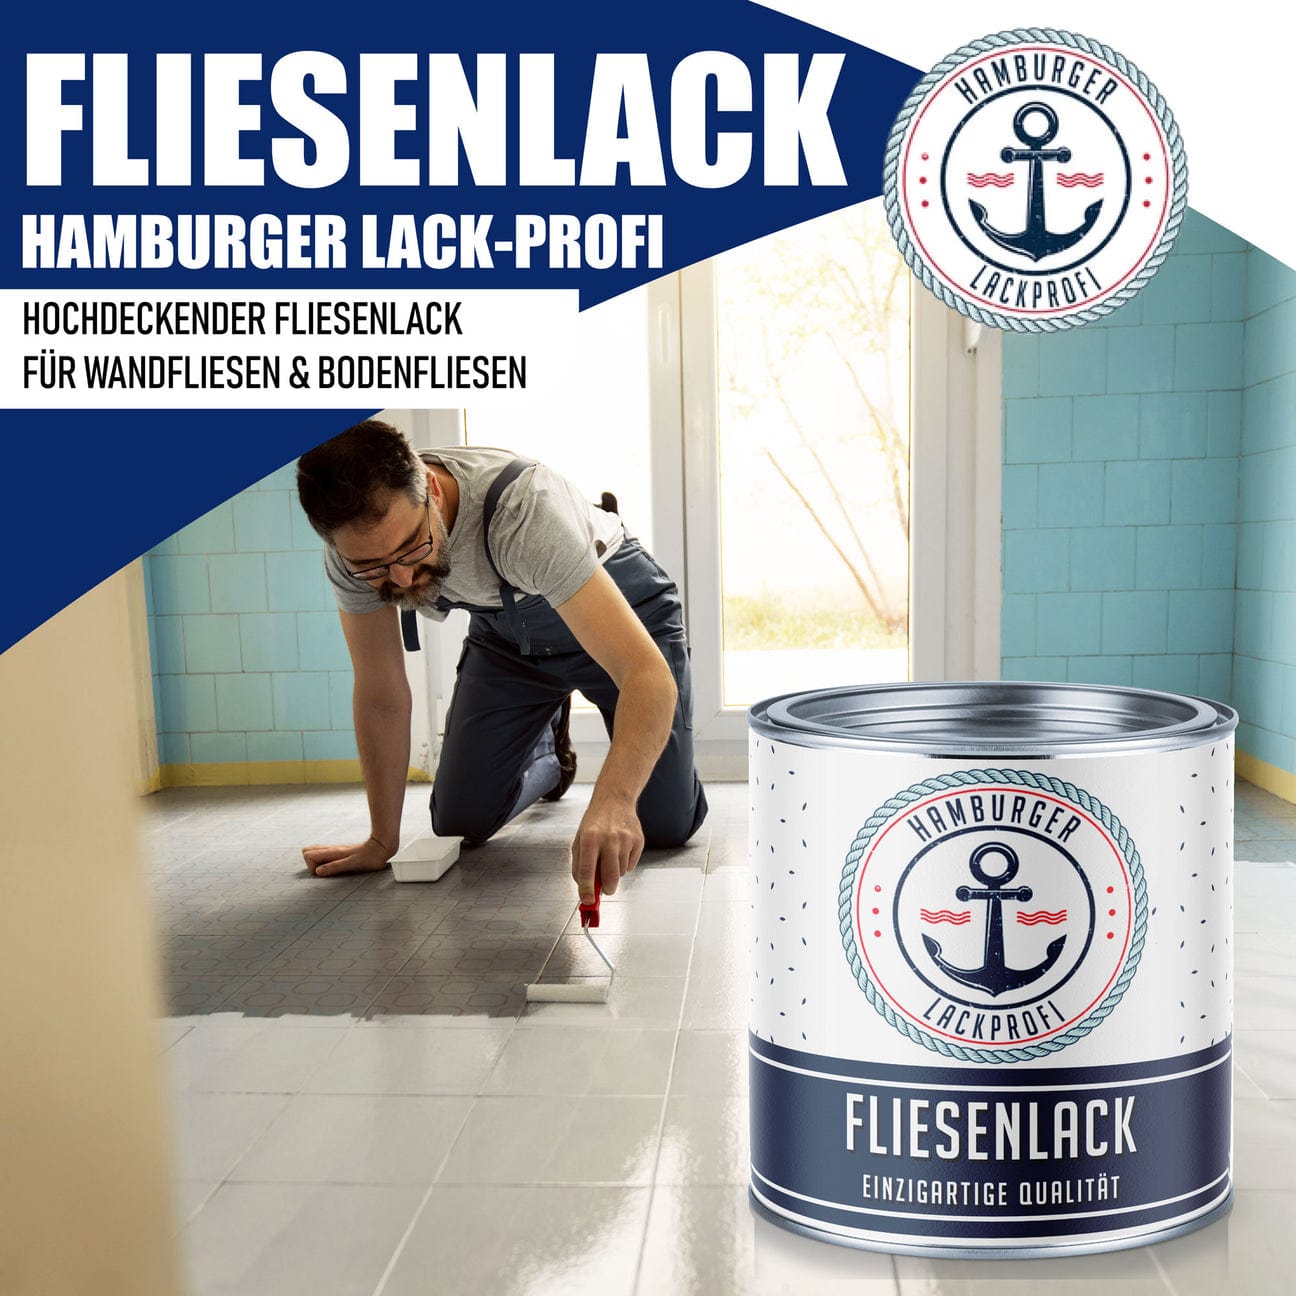 Hamburger Lack-Profi Hamburger Lack-Profi Fliesenlack Minttürkis RAL 6033 - hochdeckende Fliesenfarbe Grün